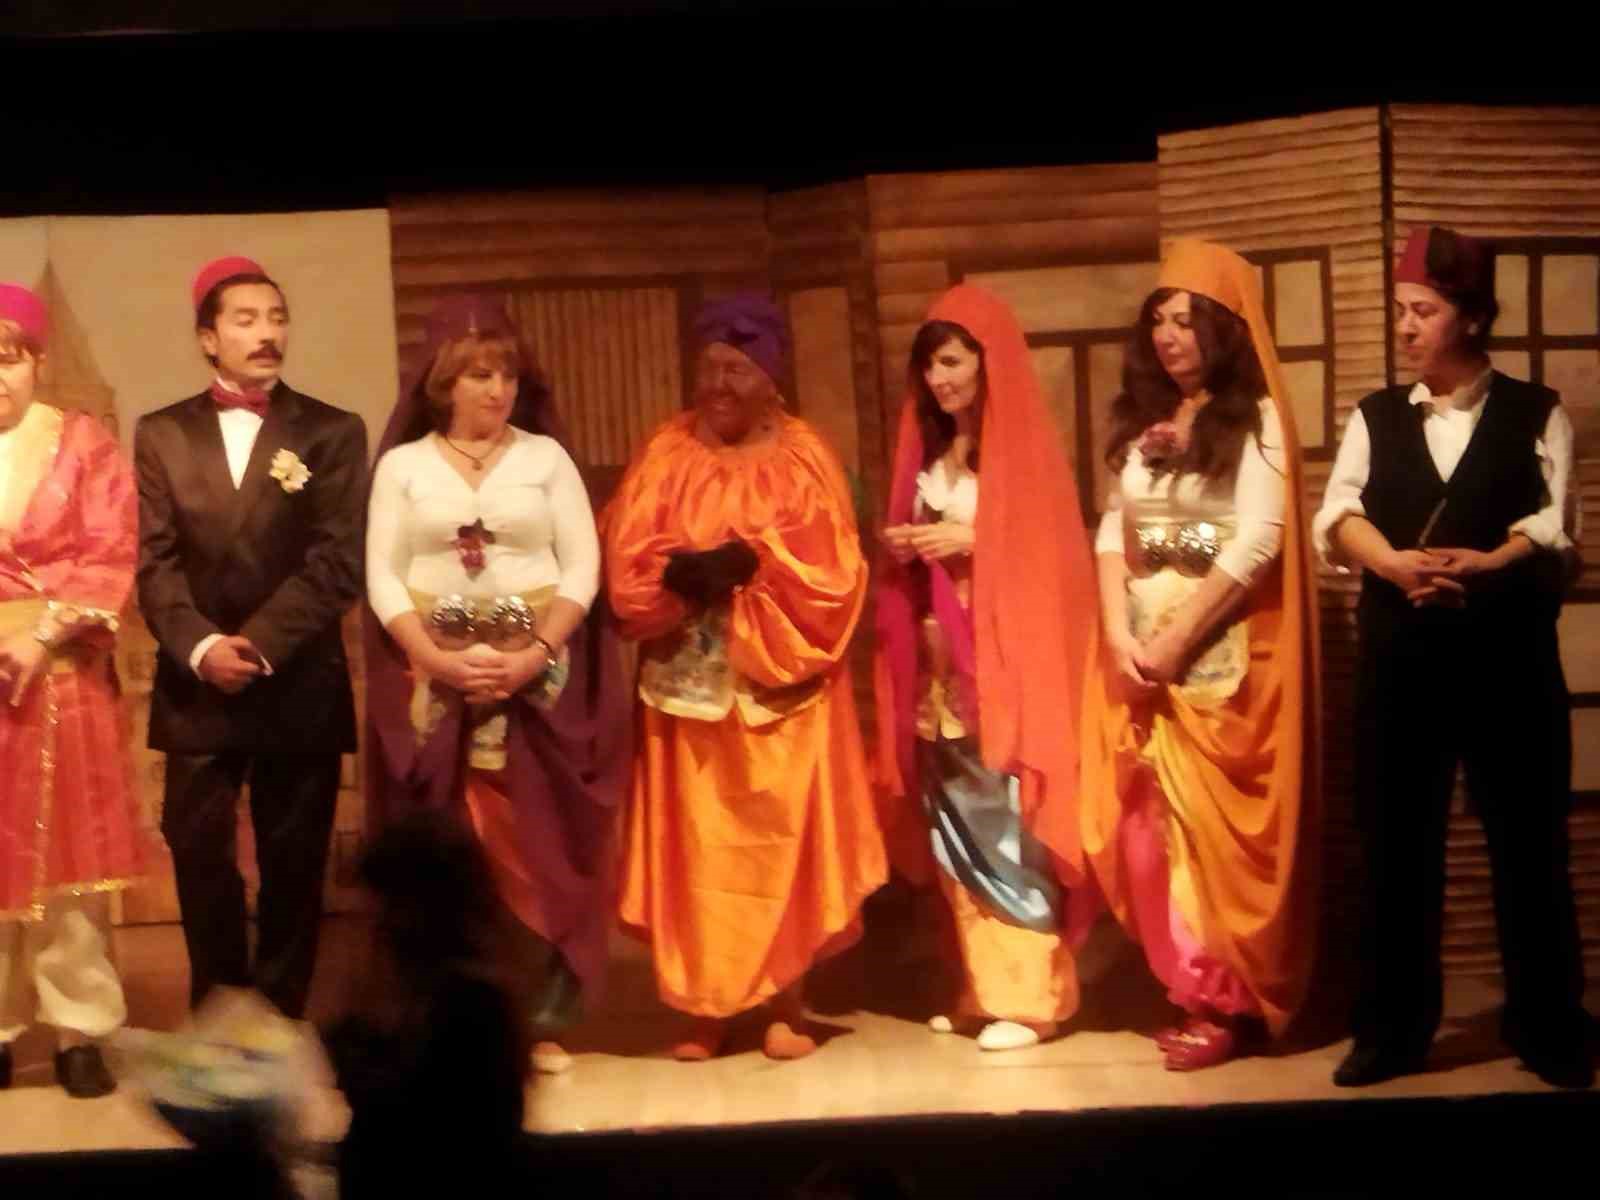 Köyceğizli tiyatrocular Kanlı Nigar’ oyununu başarıyla sergilediler